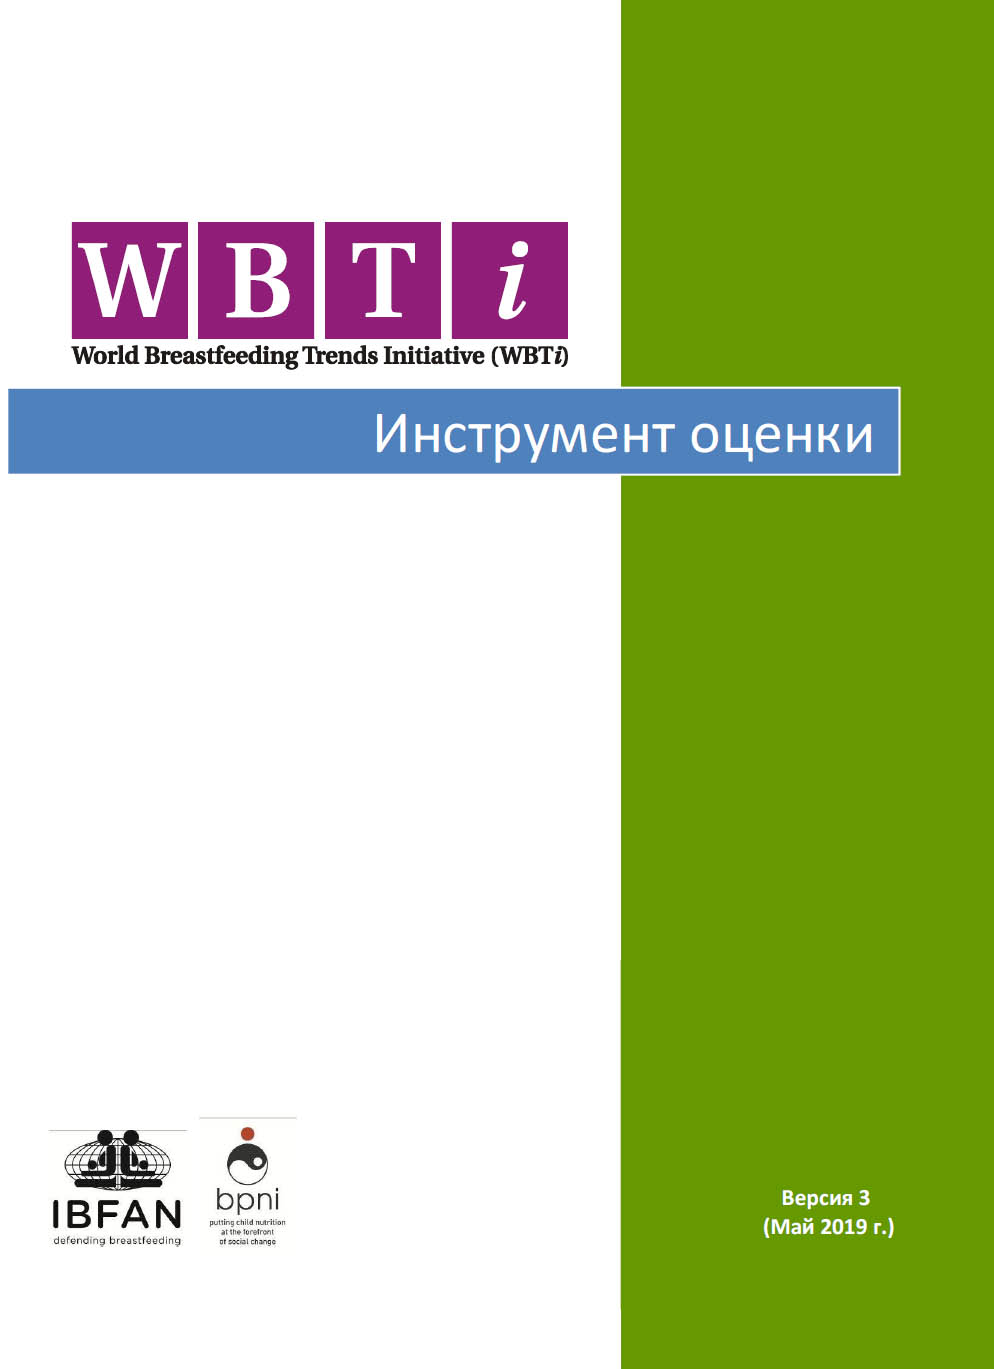 WBTi Assessment Tool (Russian)-May 2019 | WBTi